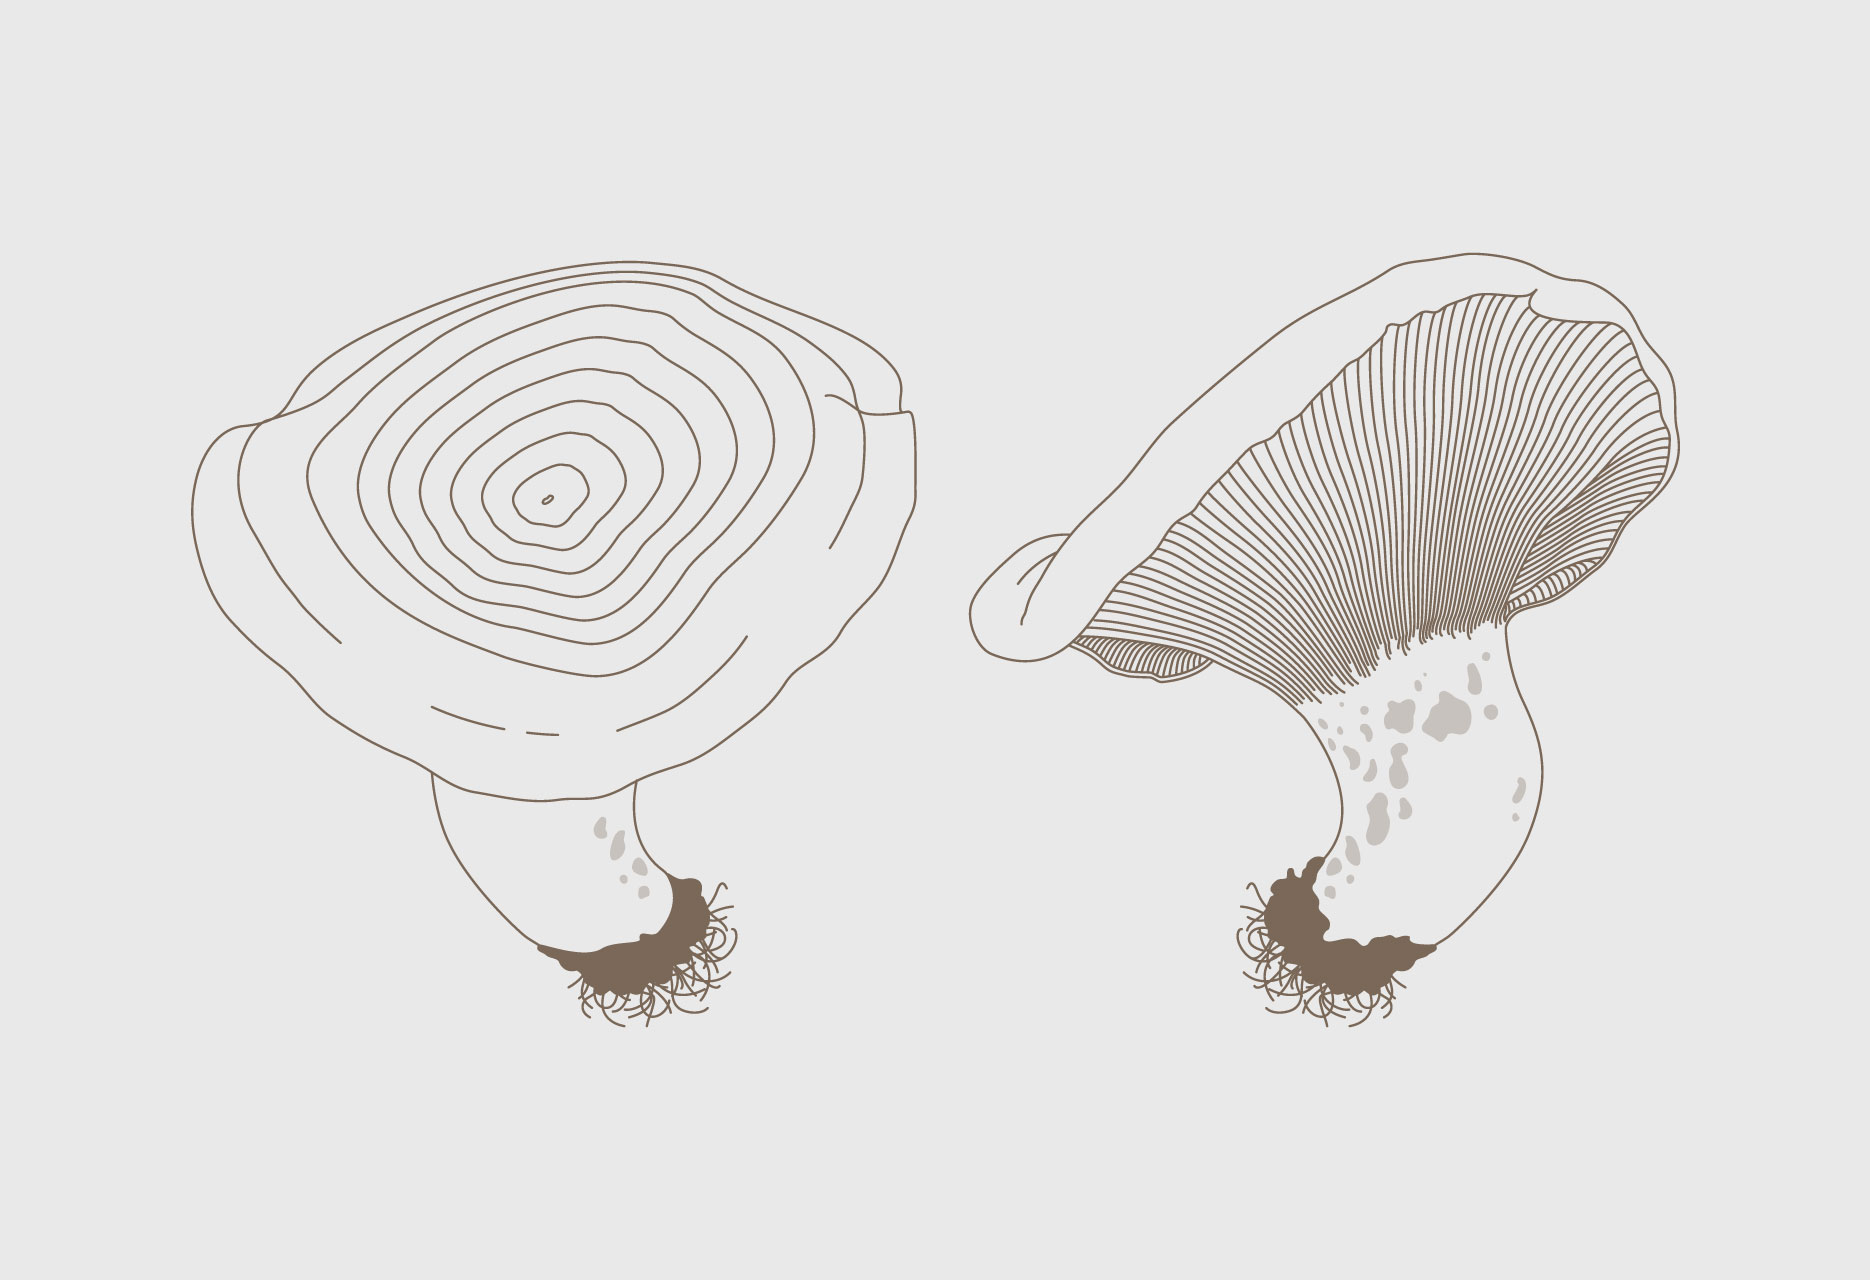 Diseño de marca y guía micológica Tierras de Berlanga - diseño editorial / identidad corporativa / ilustración - 2015